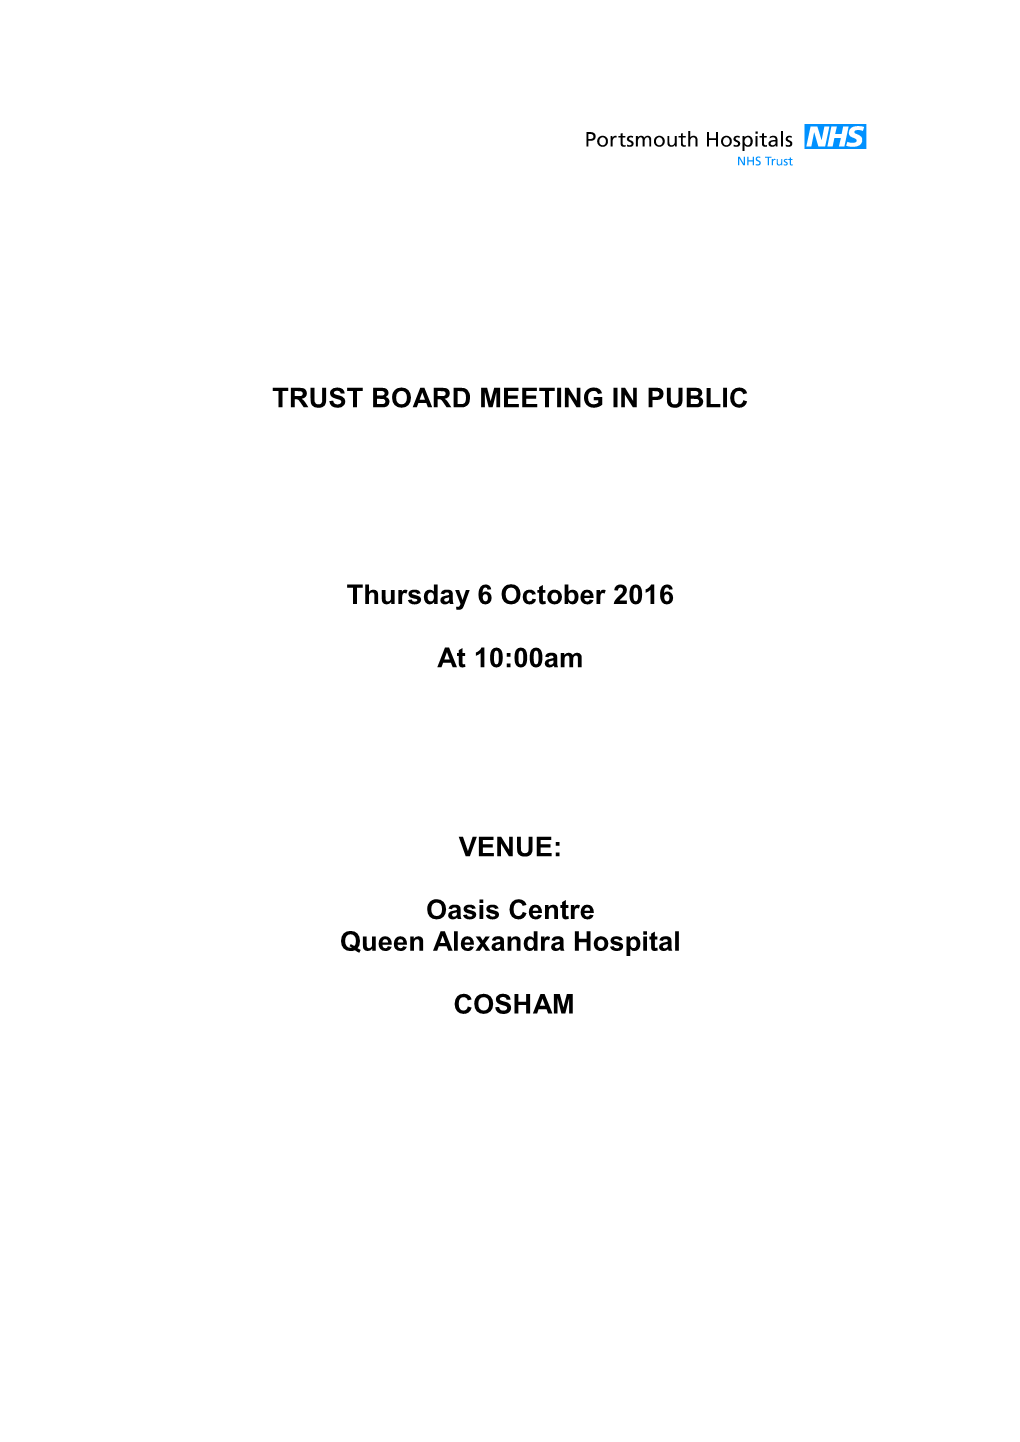 TRUST BOARD MEETING in PUBLIC Thursday 6 October 2016 at 10